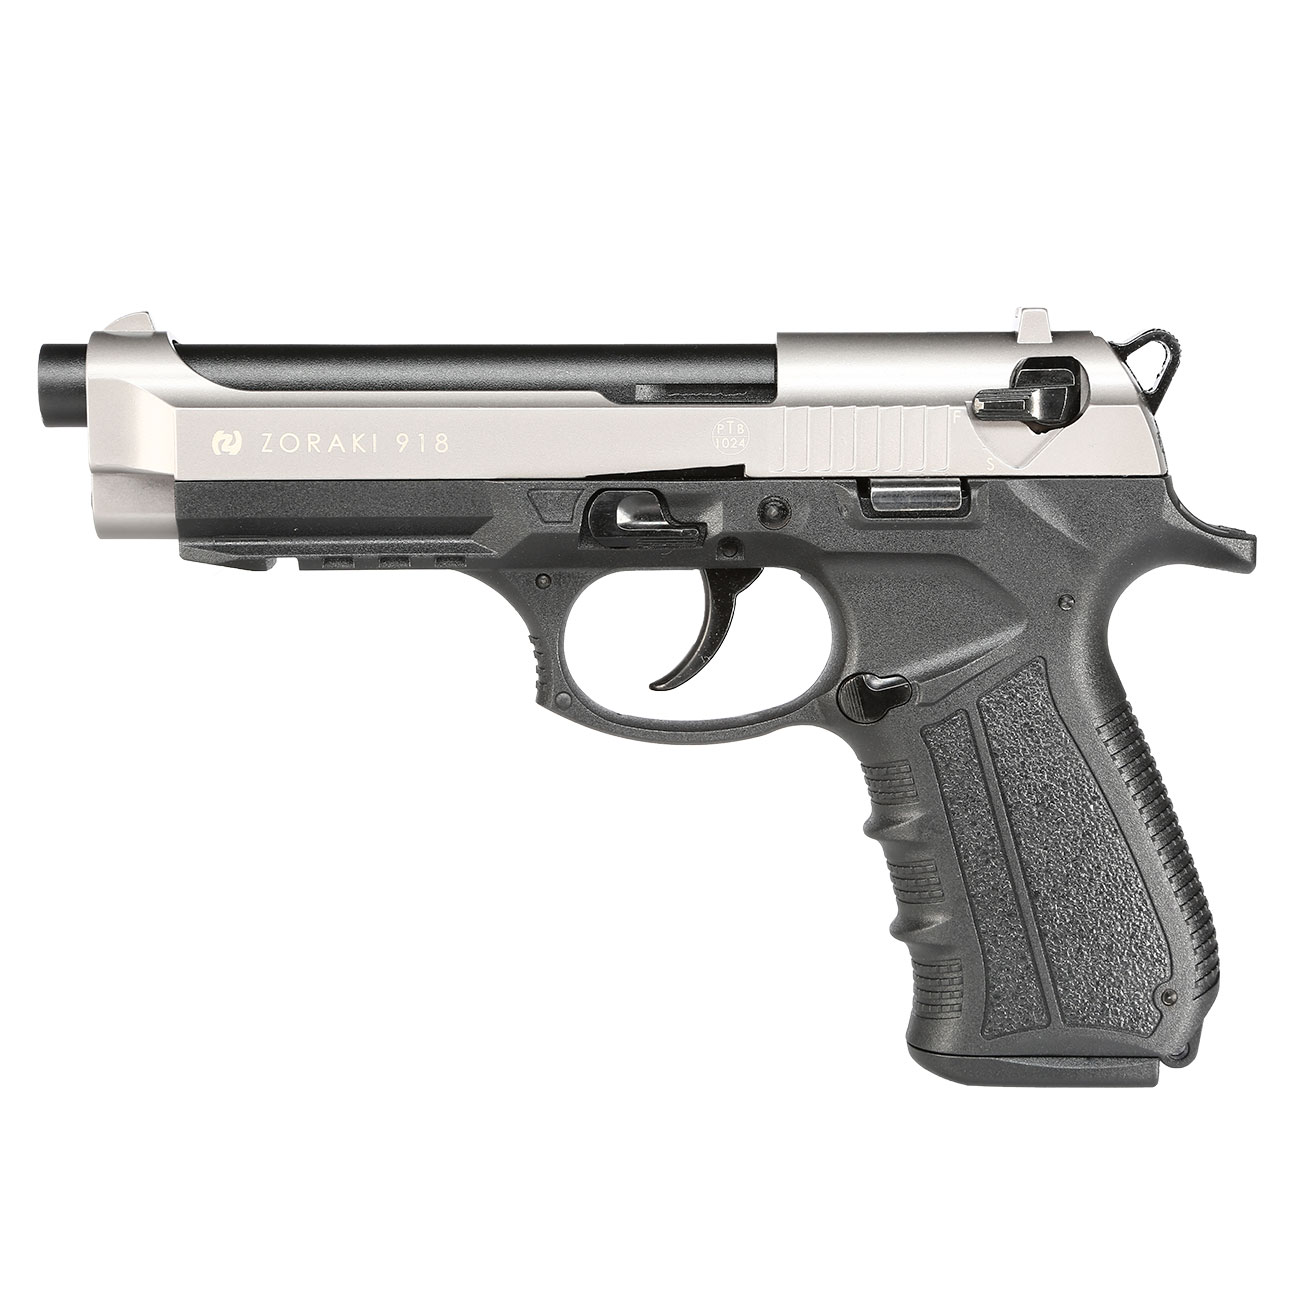 Zoraki 918 Schreckschuss-Pistole 9mm P.A.K. titan kaufen